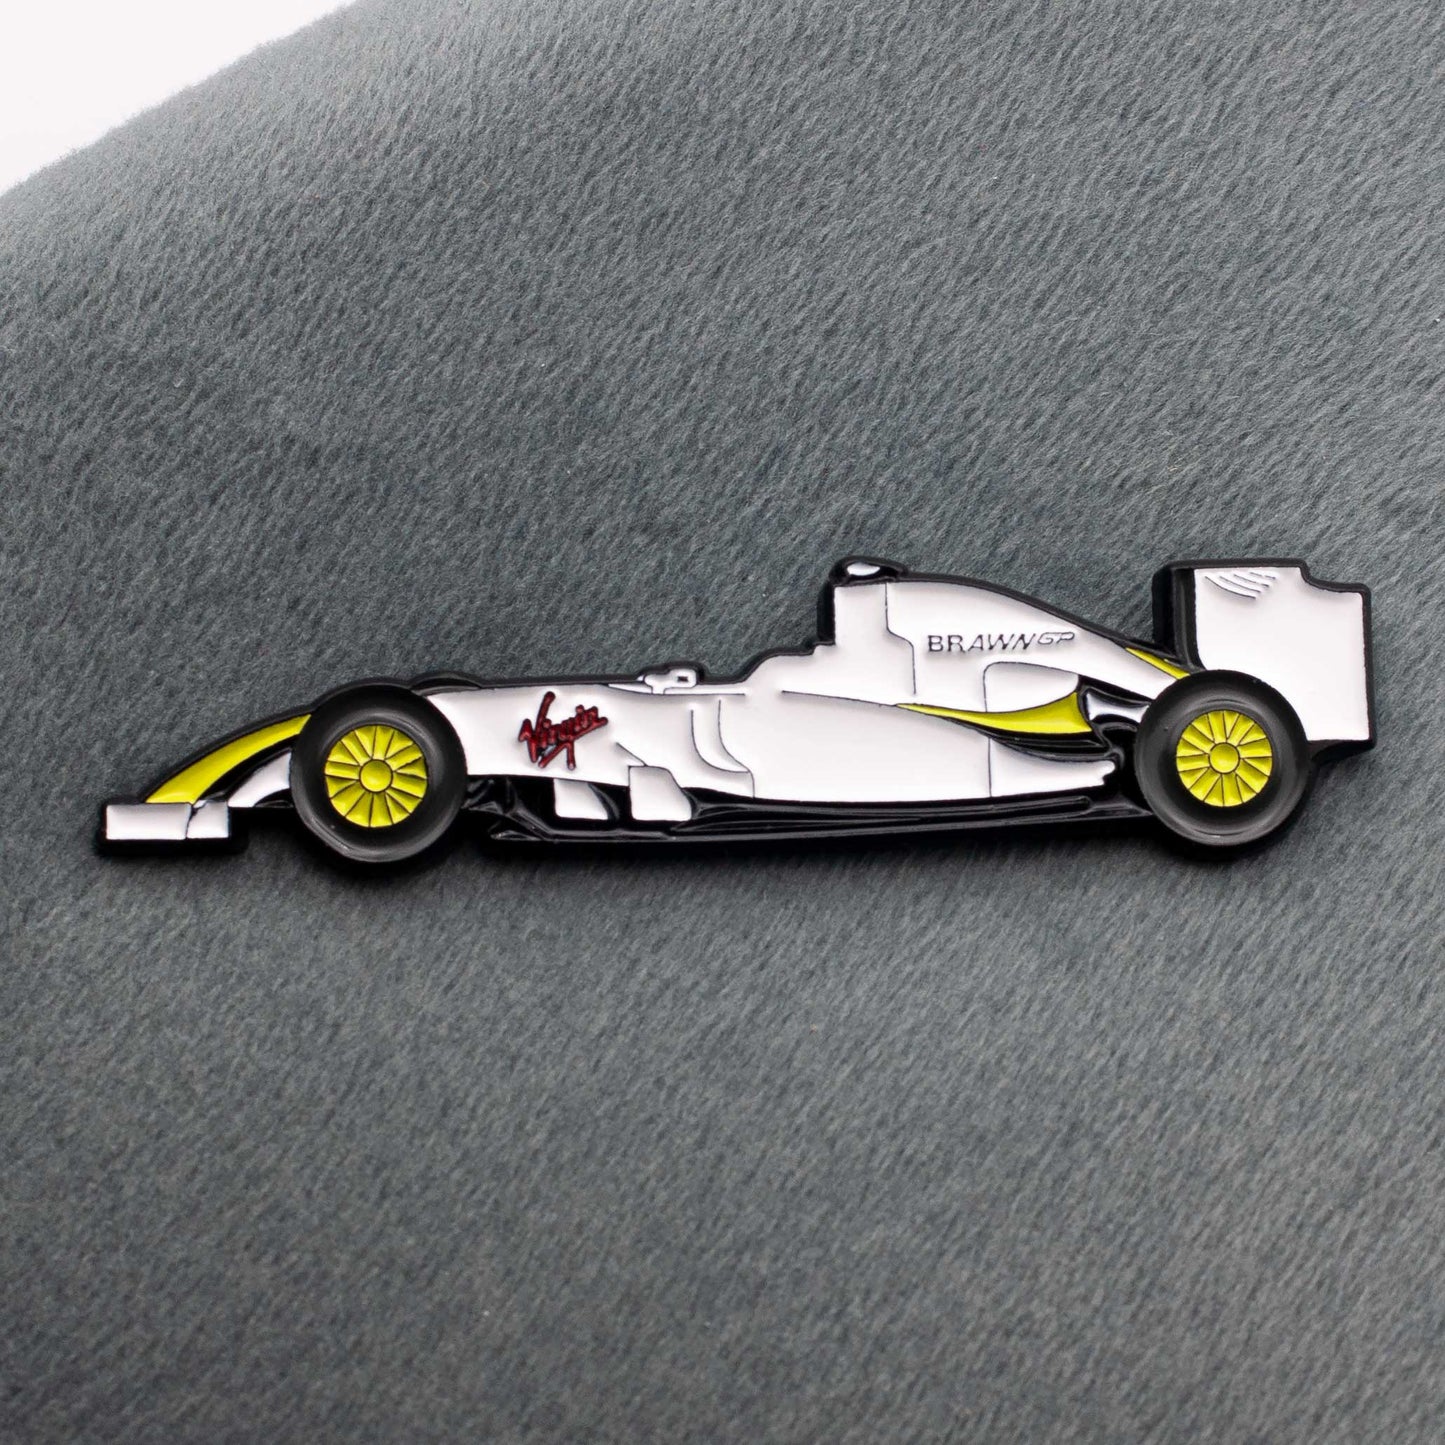 Brawn BGP 001 Formula One Car Enamel Pin shown on grey cloth